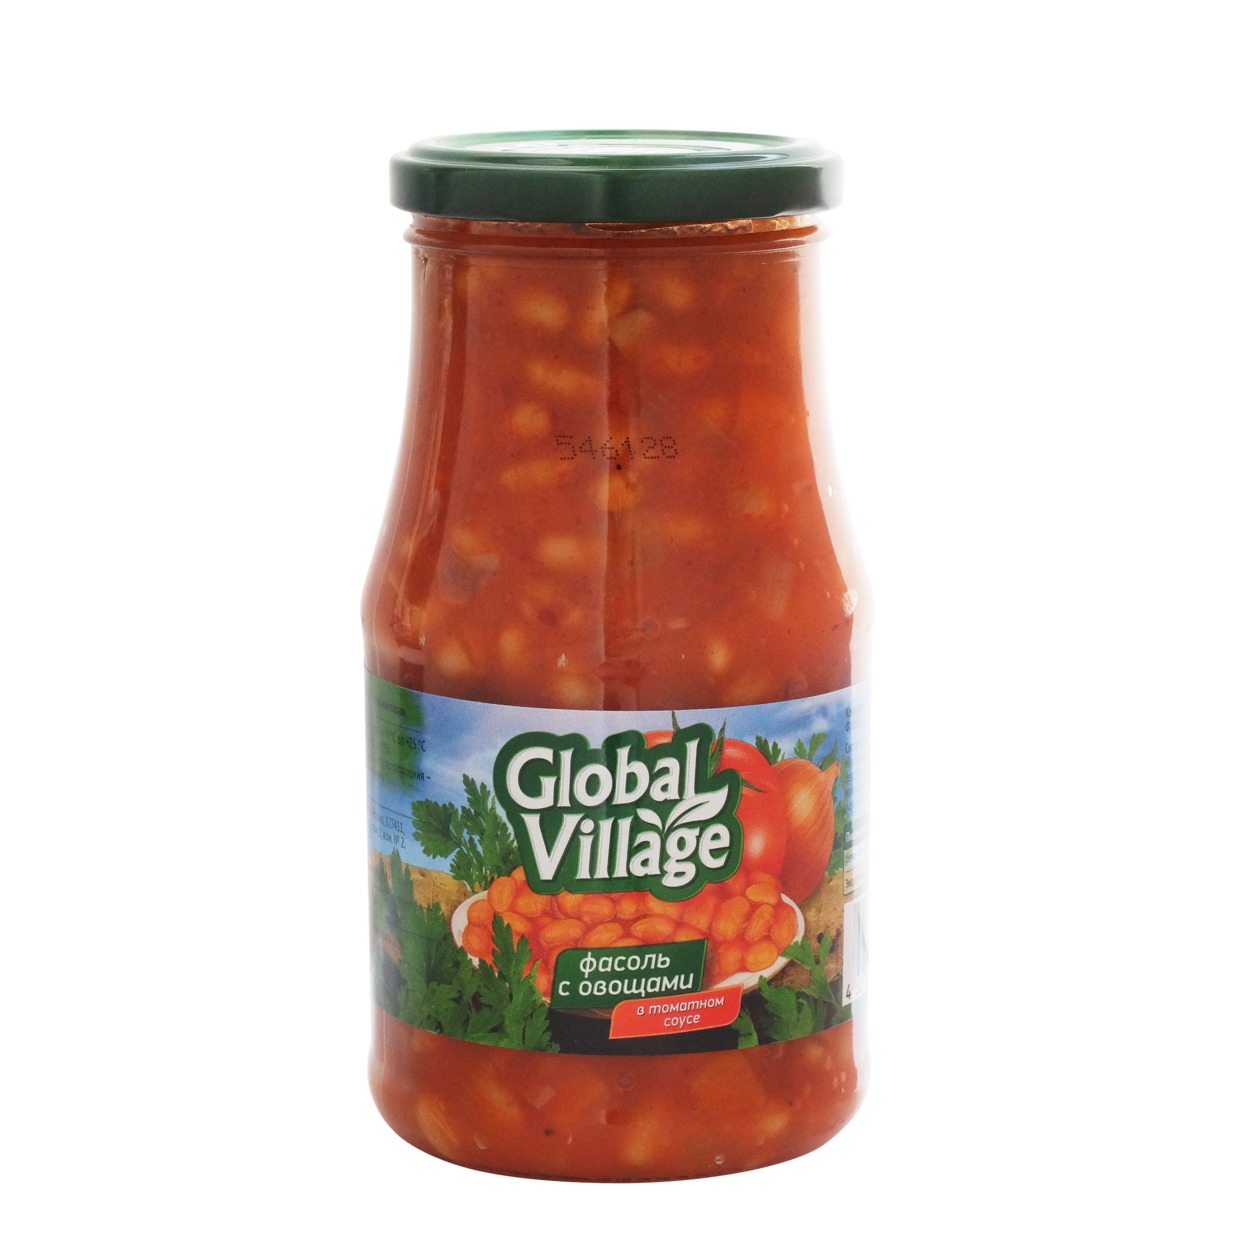 Фасоль Global Village с овощами в томатном соусе 530 г по акции в Пятерочке